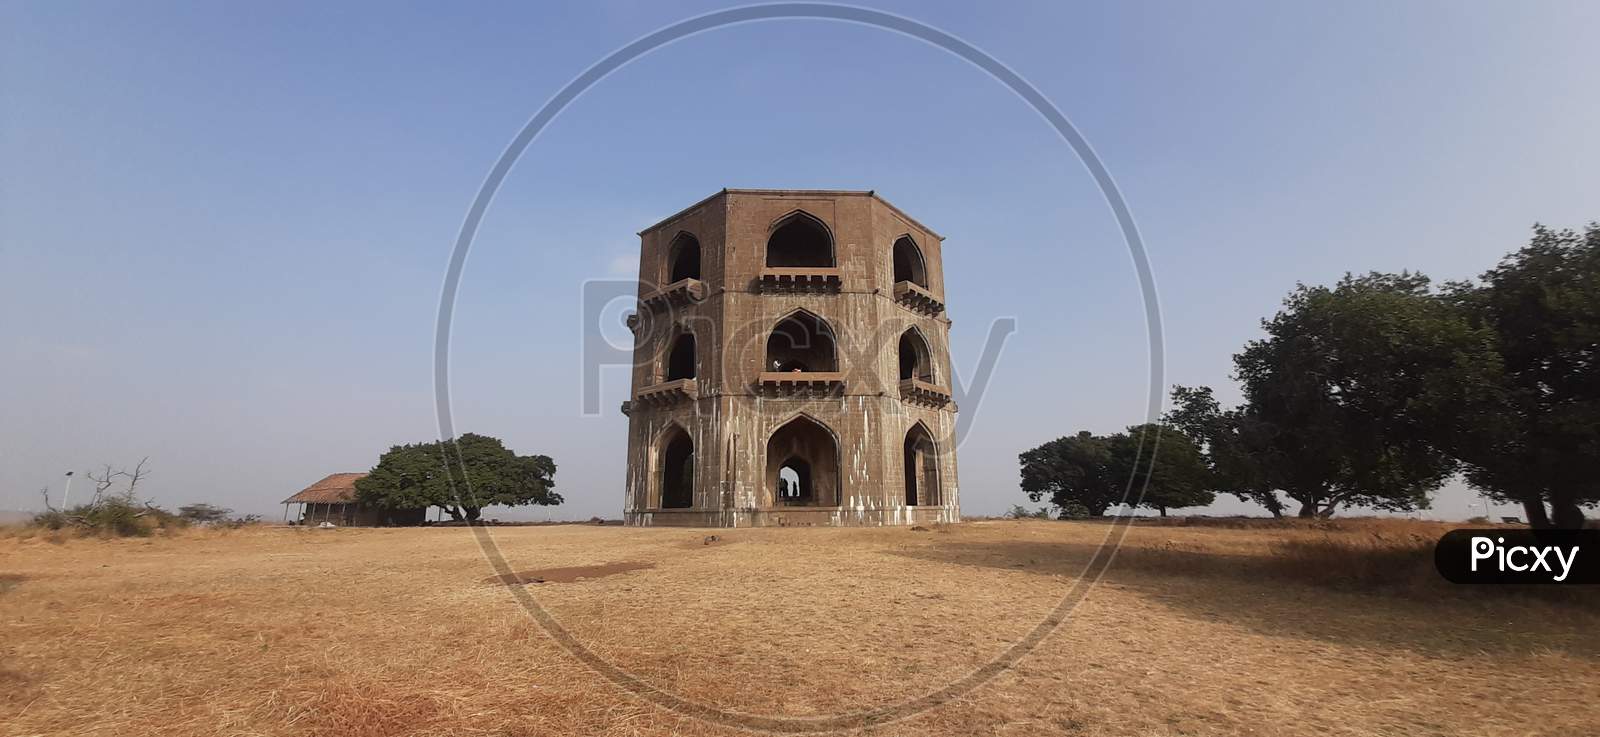 Chandbibi Mahal